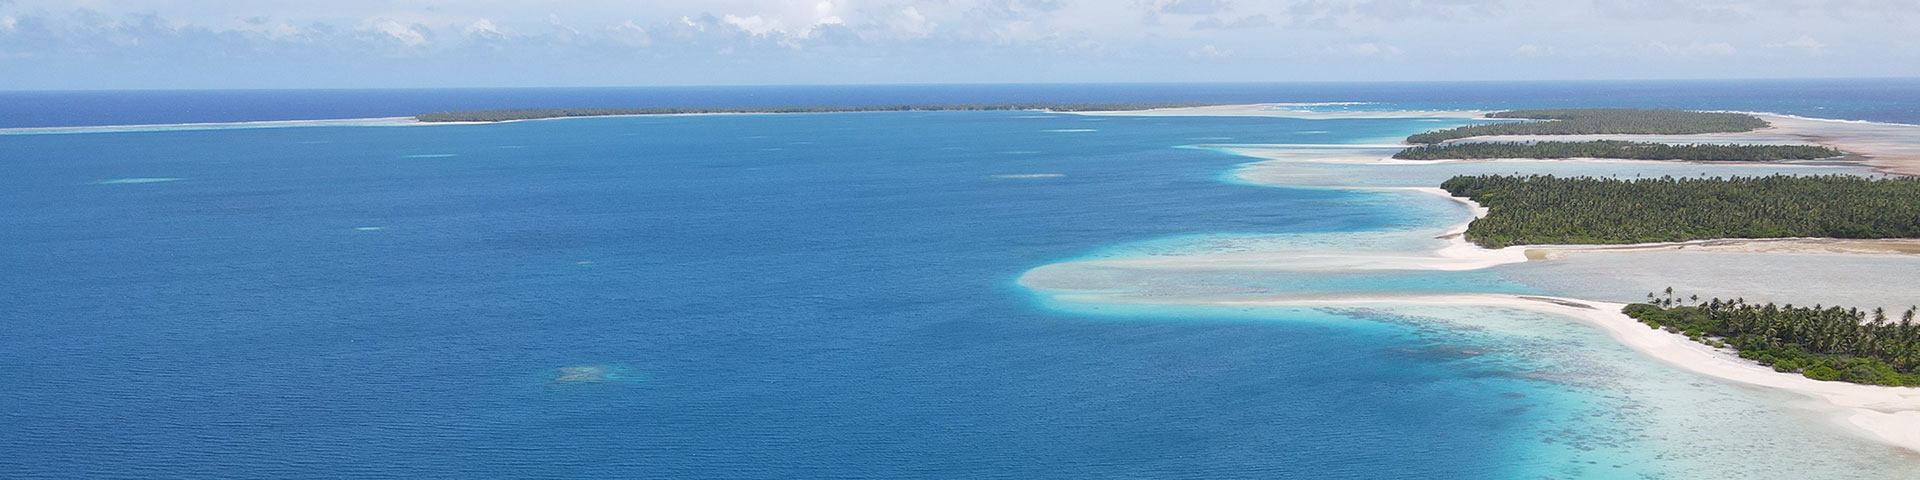 Kleine, begrünte Inseln umgeben von türkisblauem Meer